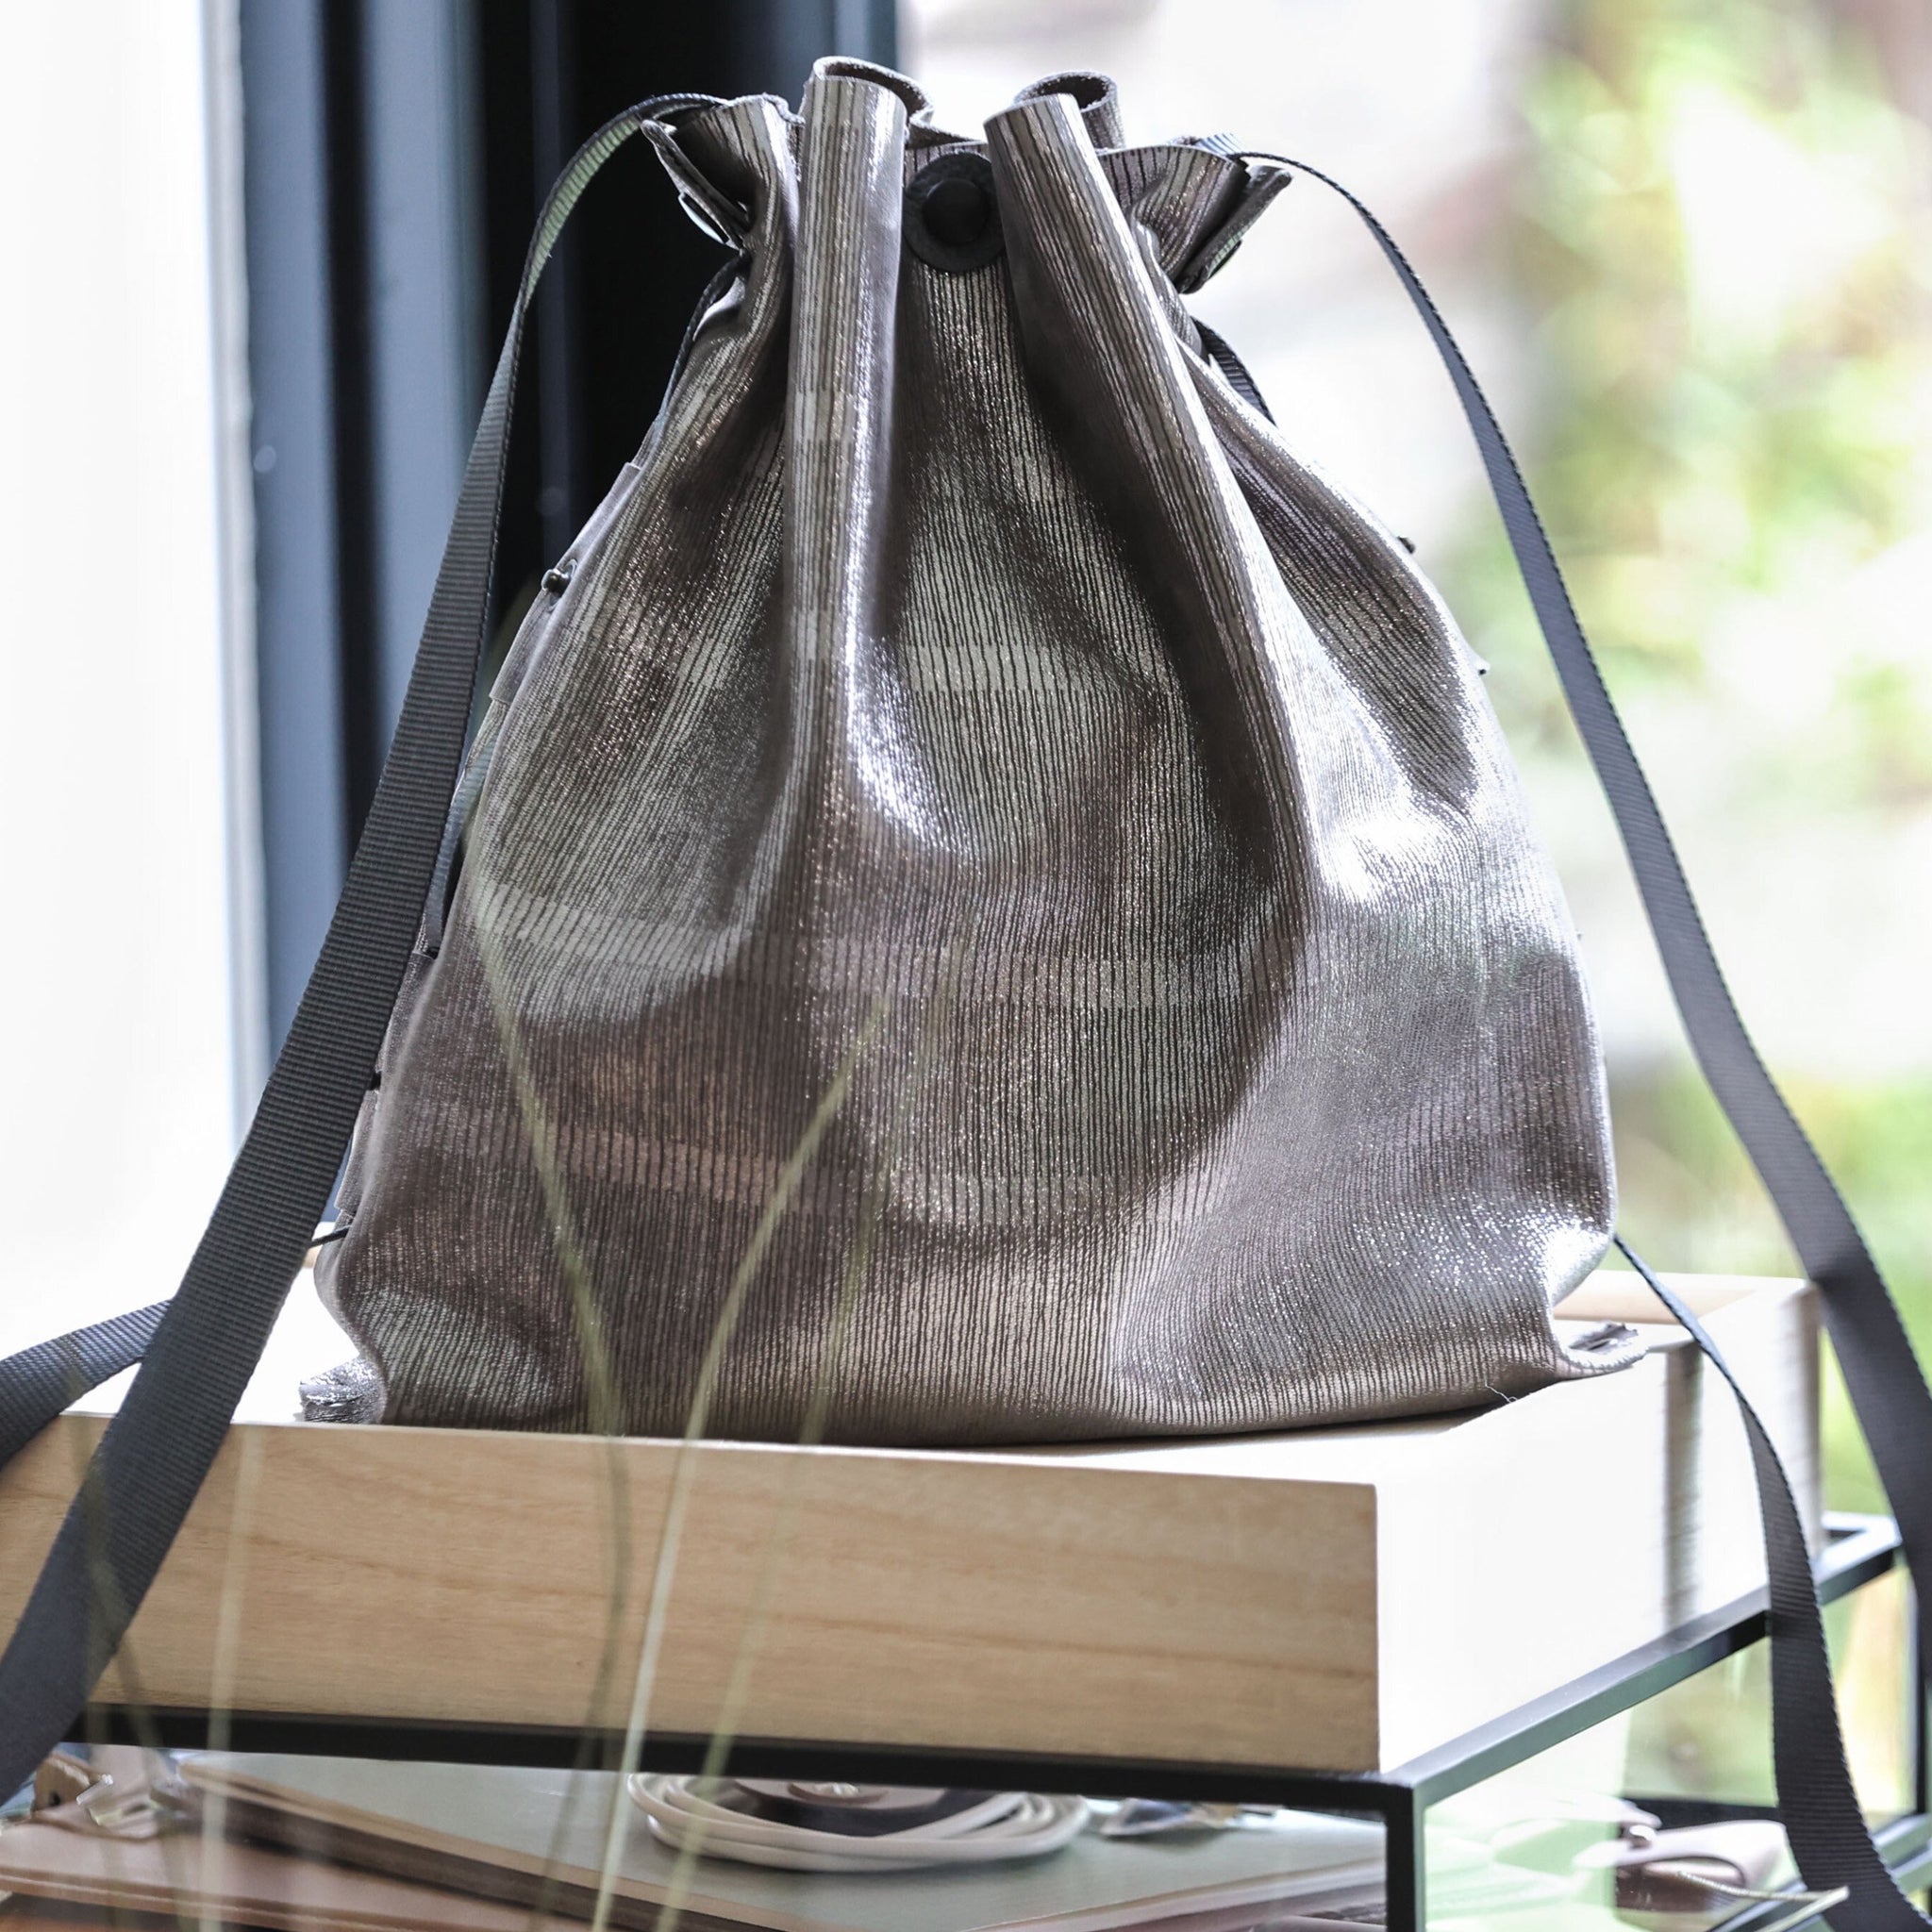 Cours sur le travail du cuir : Fabrication d'une sacoche pour